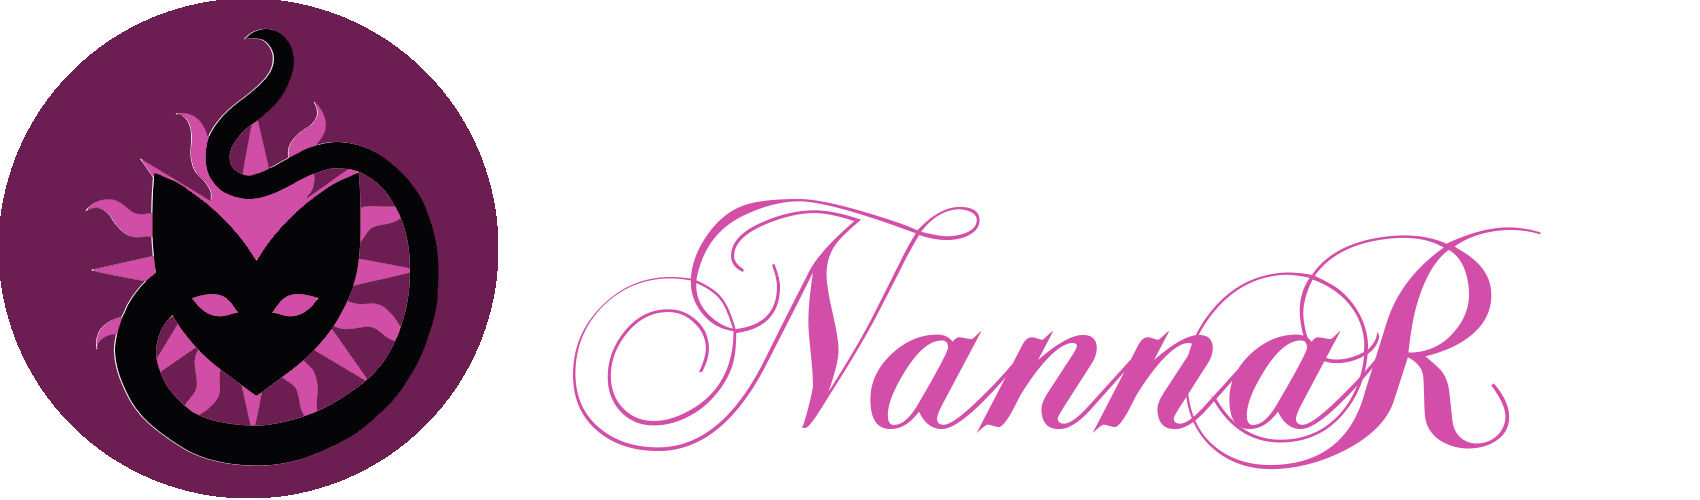 Nannar